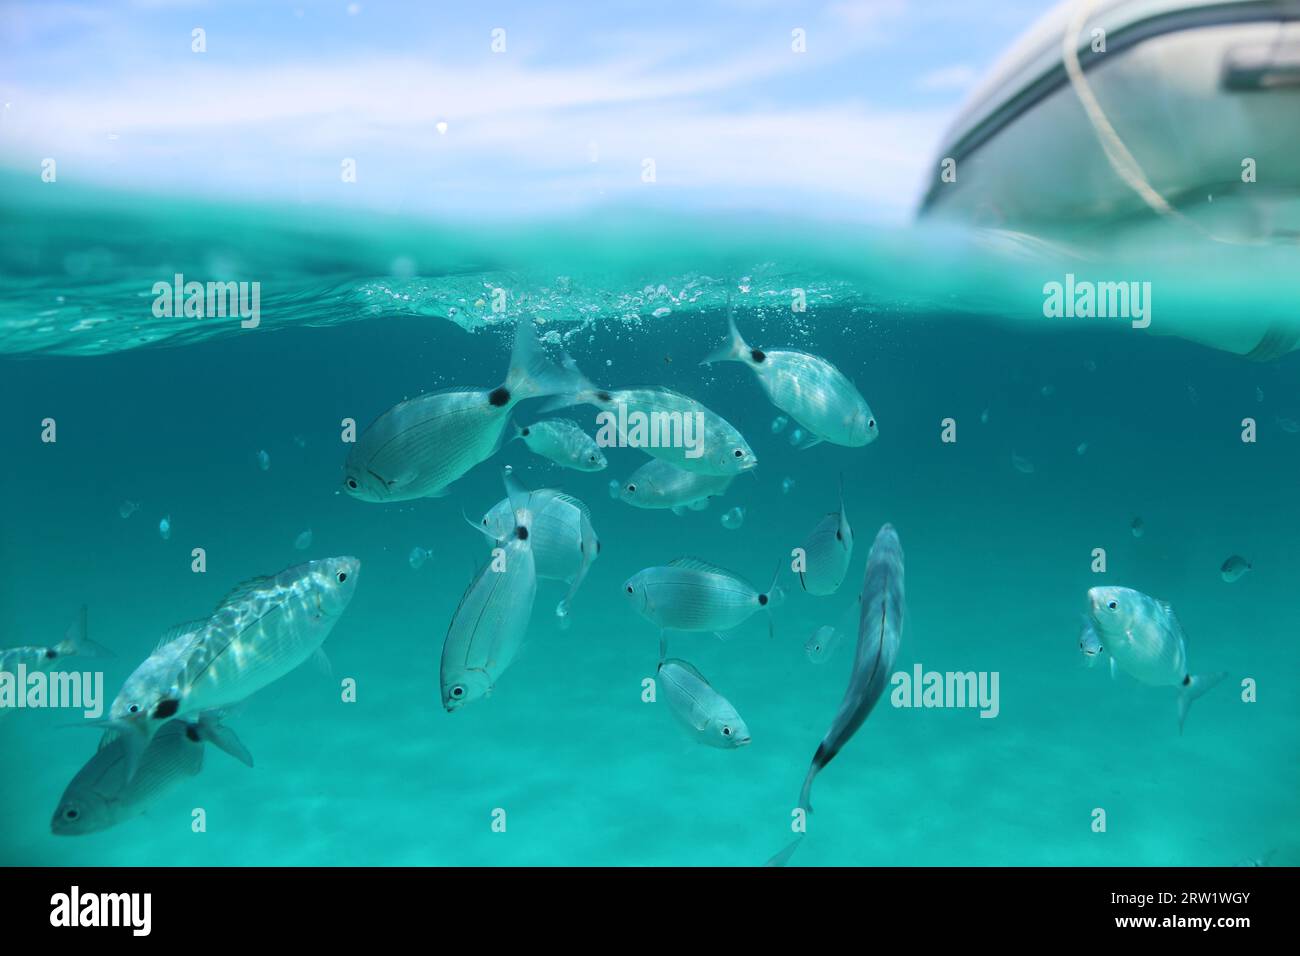 Geteilter Bildschirm, unter-über-Szene von gesattelter Meerbrasse direkt unter der Oberfläche des kristallklaren türkisfarbenen Meeres mit blauem Himmel, weißen Wolken und Schlauchboot. Stockfoto